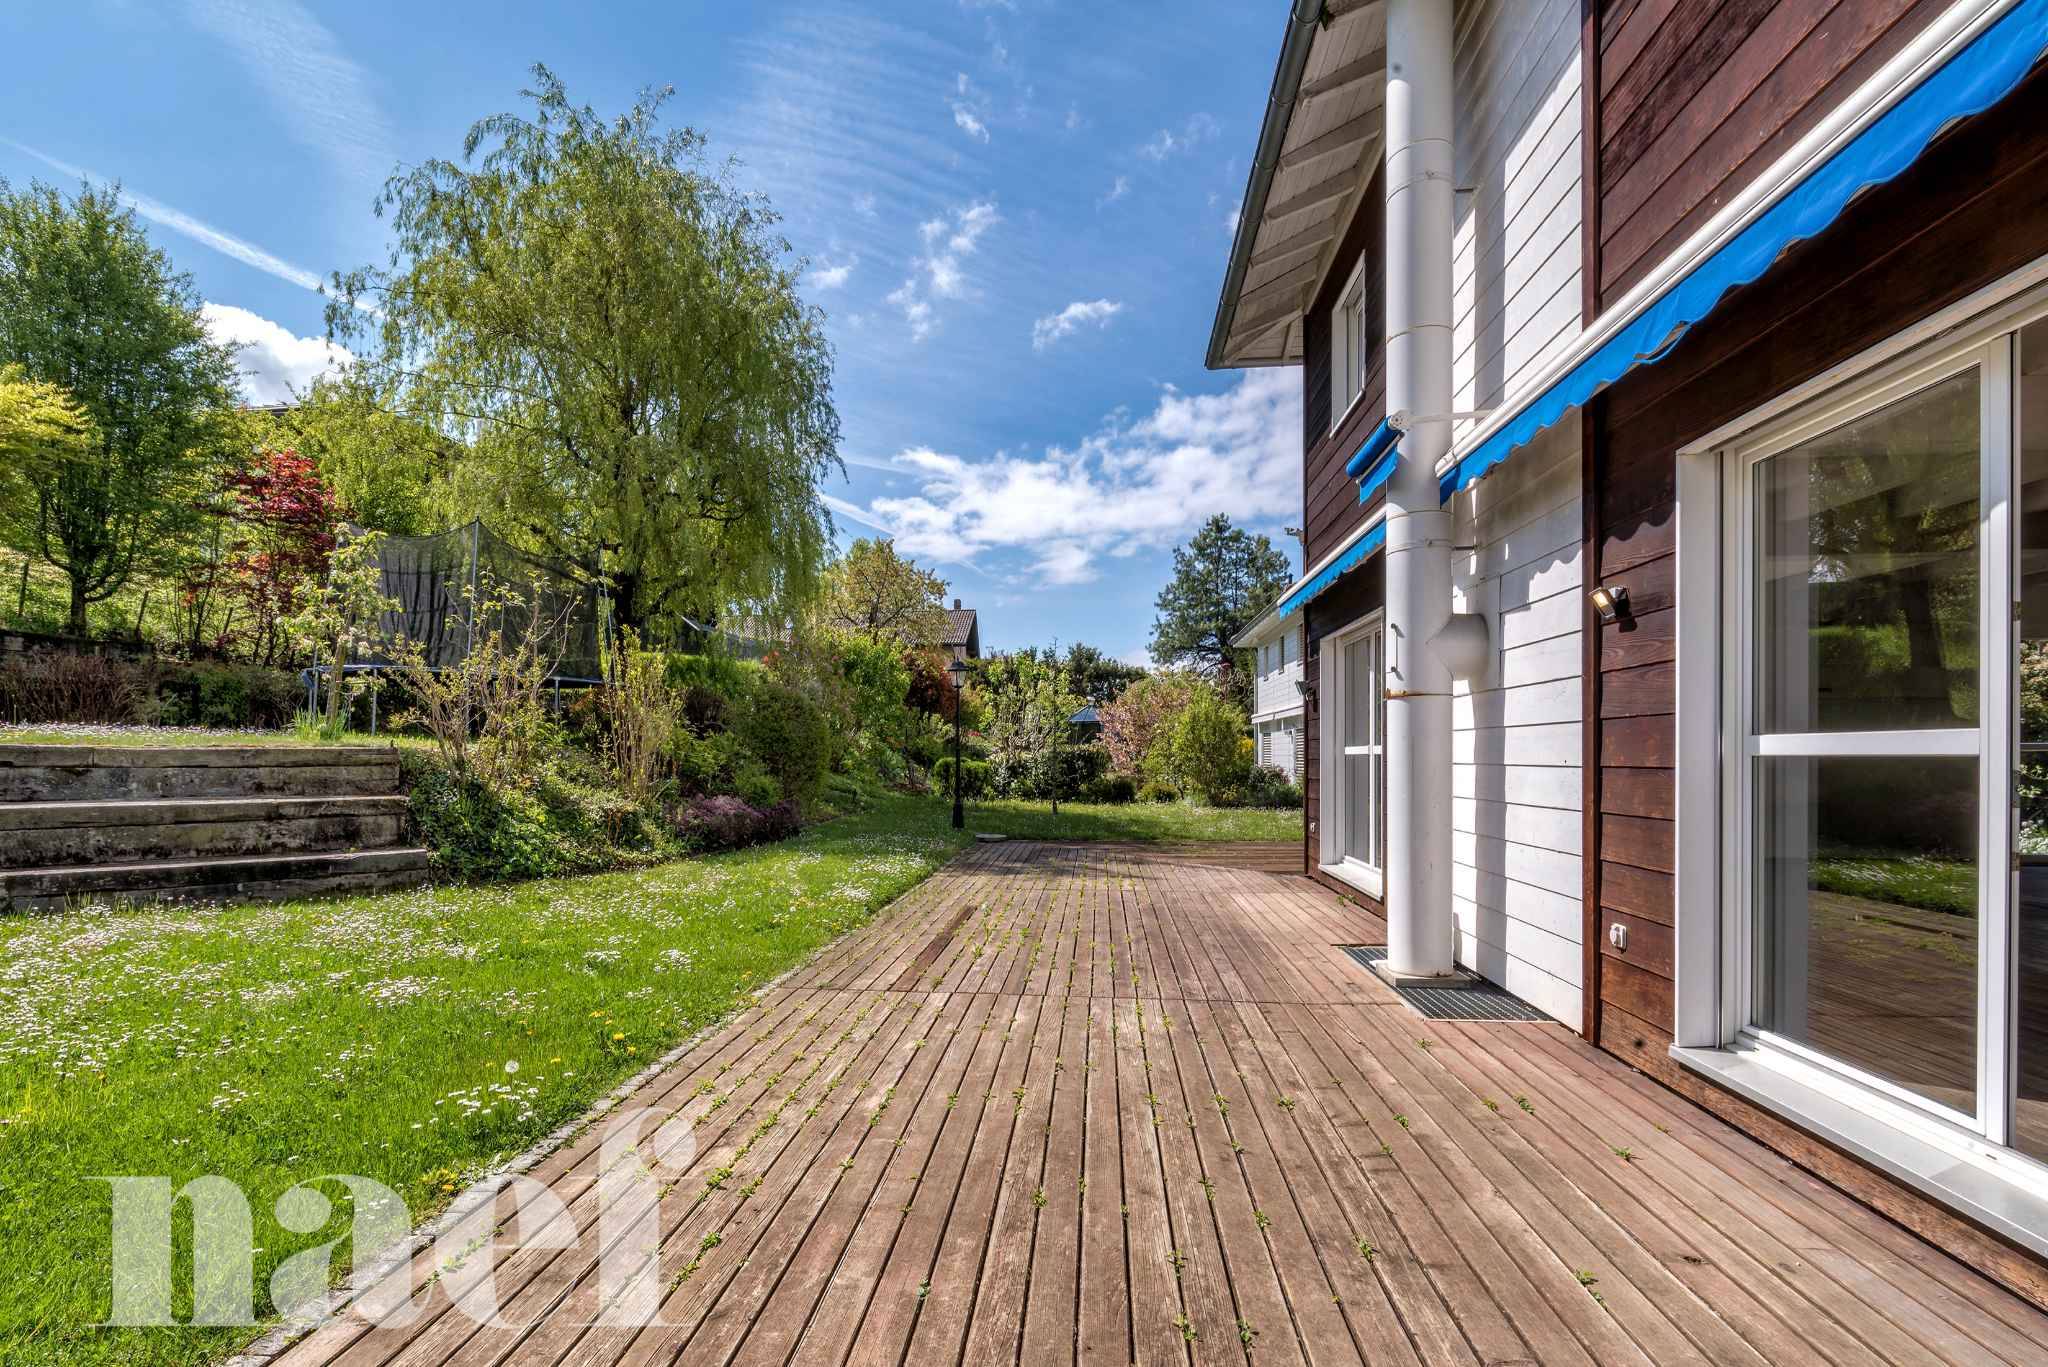 À vendre : Maison 4 chambres Le Mont-sur-Lausanne - Ref : 39748 | Naef Immobilier